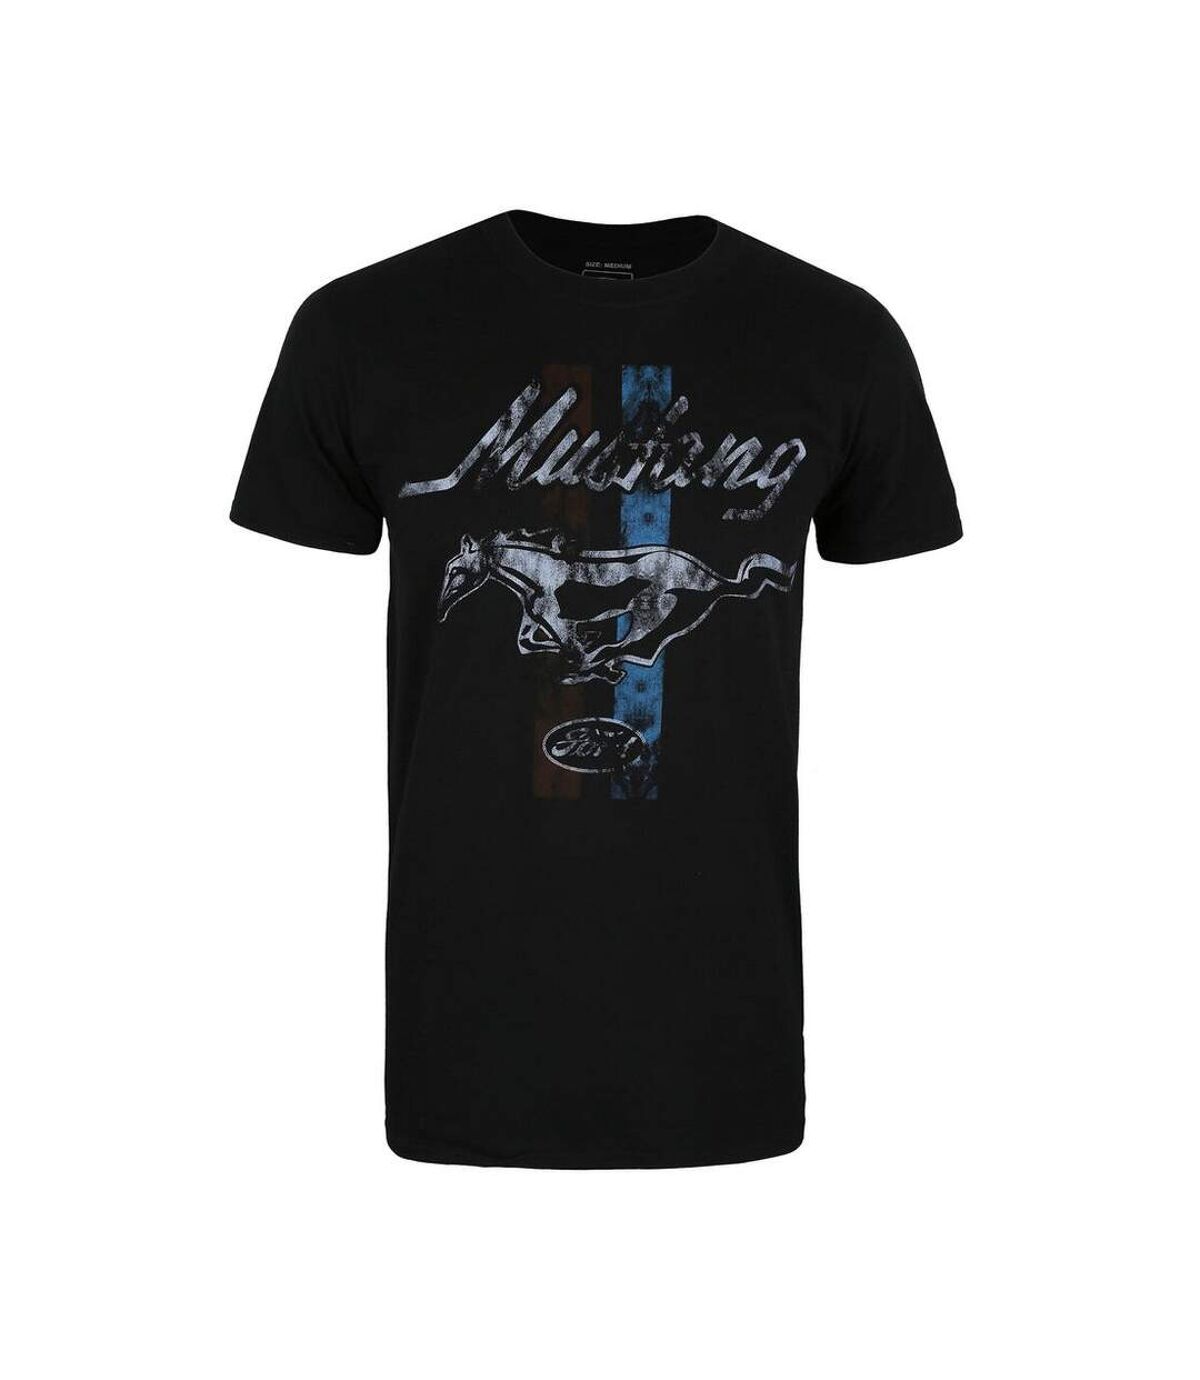 Ford - T-shirt MUSTANG - Homme (Noir / Gris / Bleu) - UTTV1190